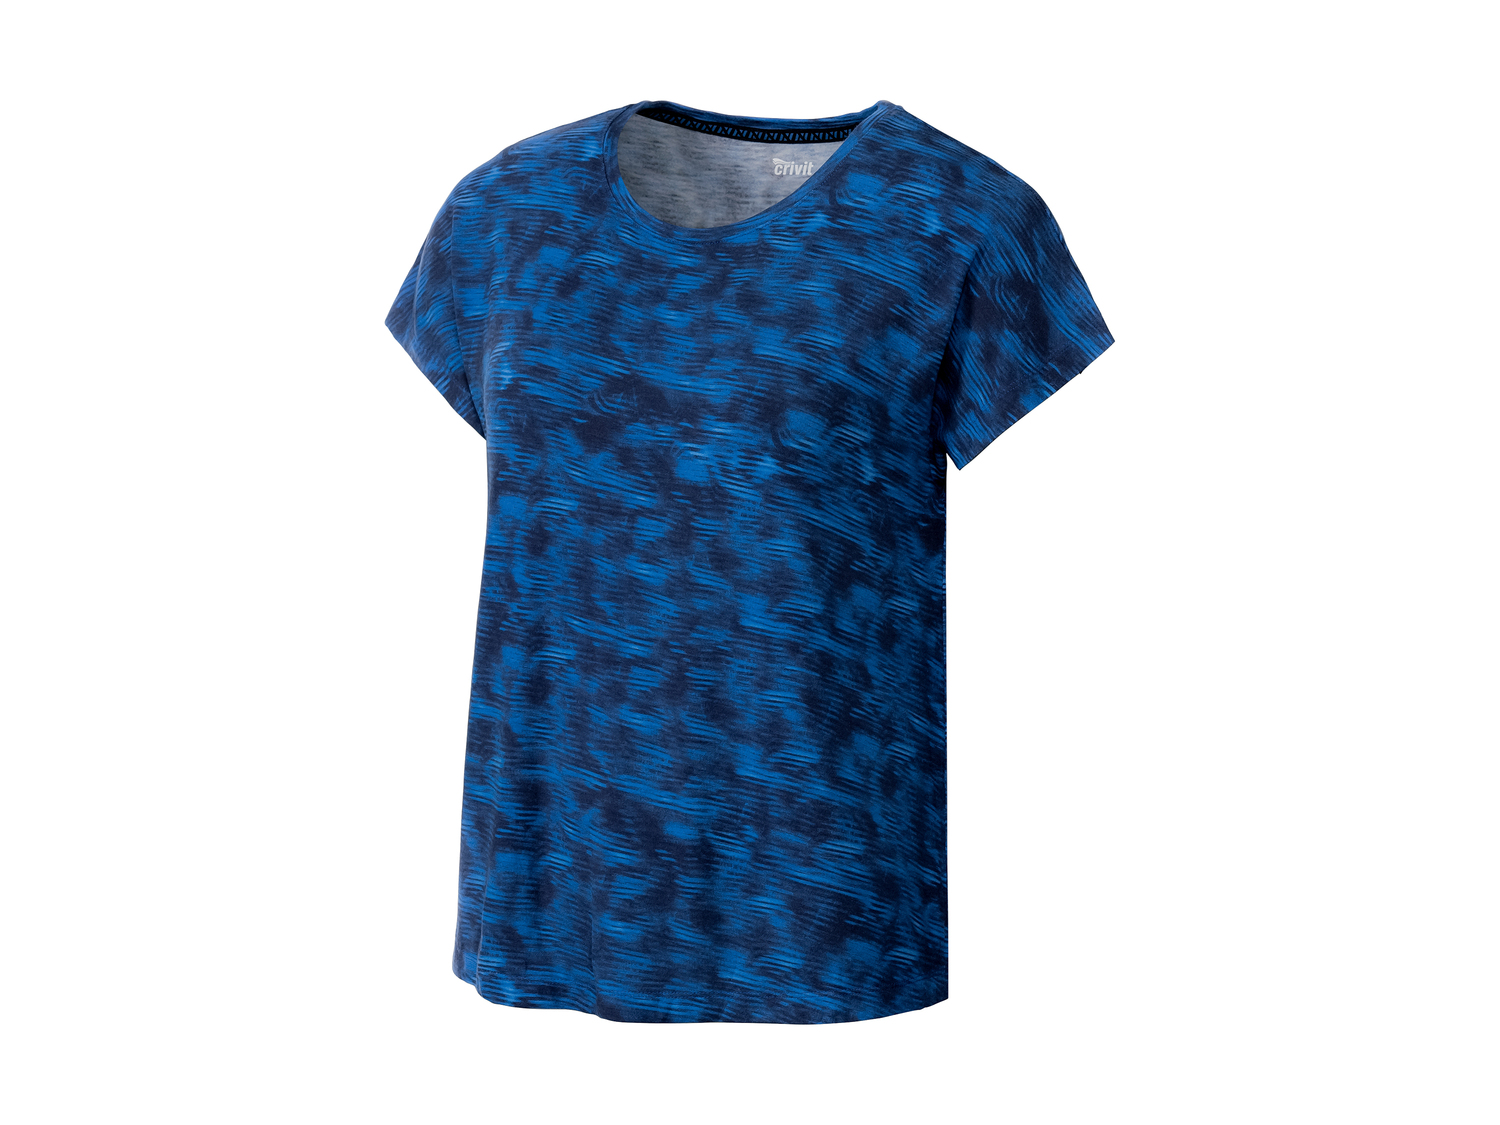 T-shirt technique femme , le prix 4.99 € 
- Du S au L selon modèle.
- Ex. 95 ...